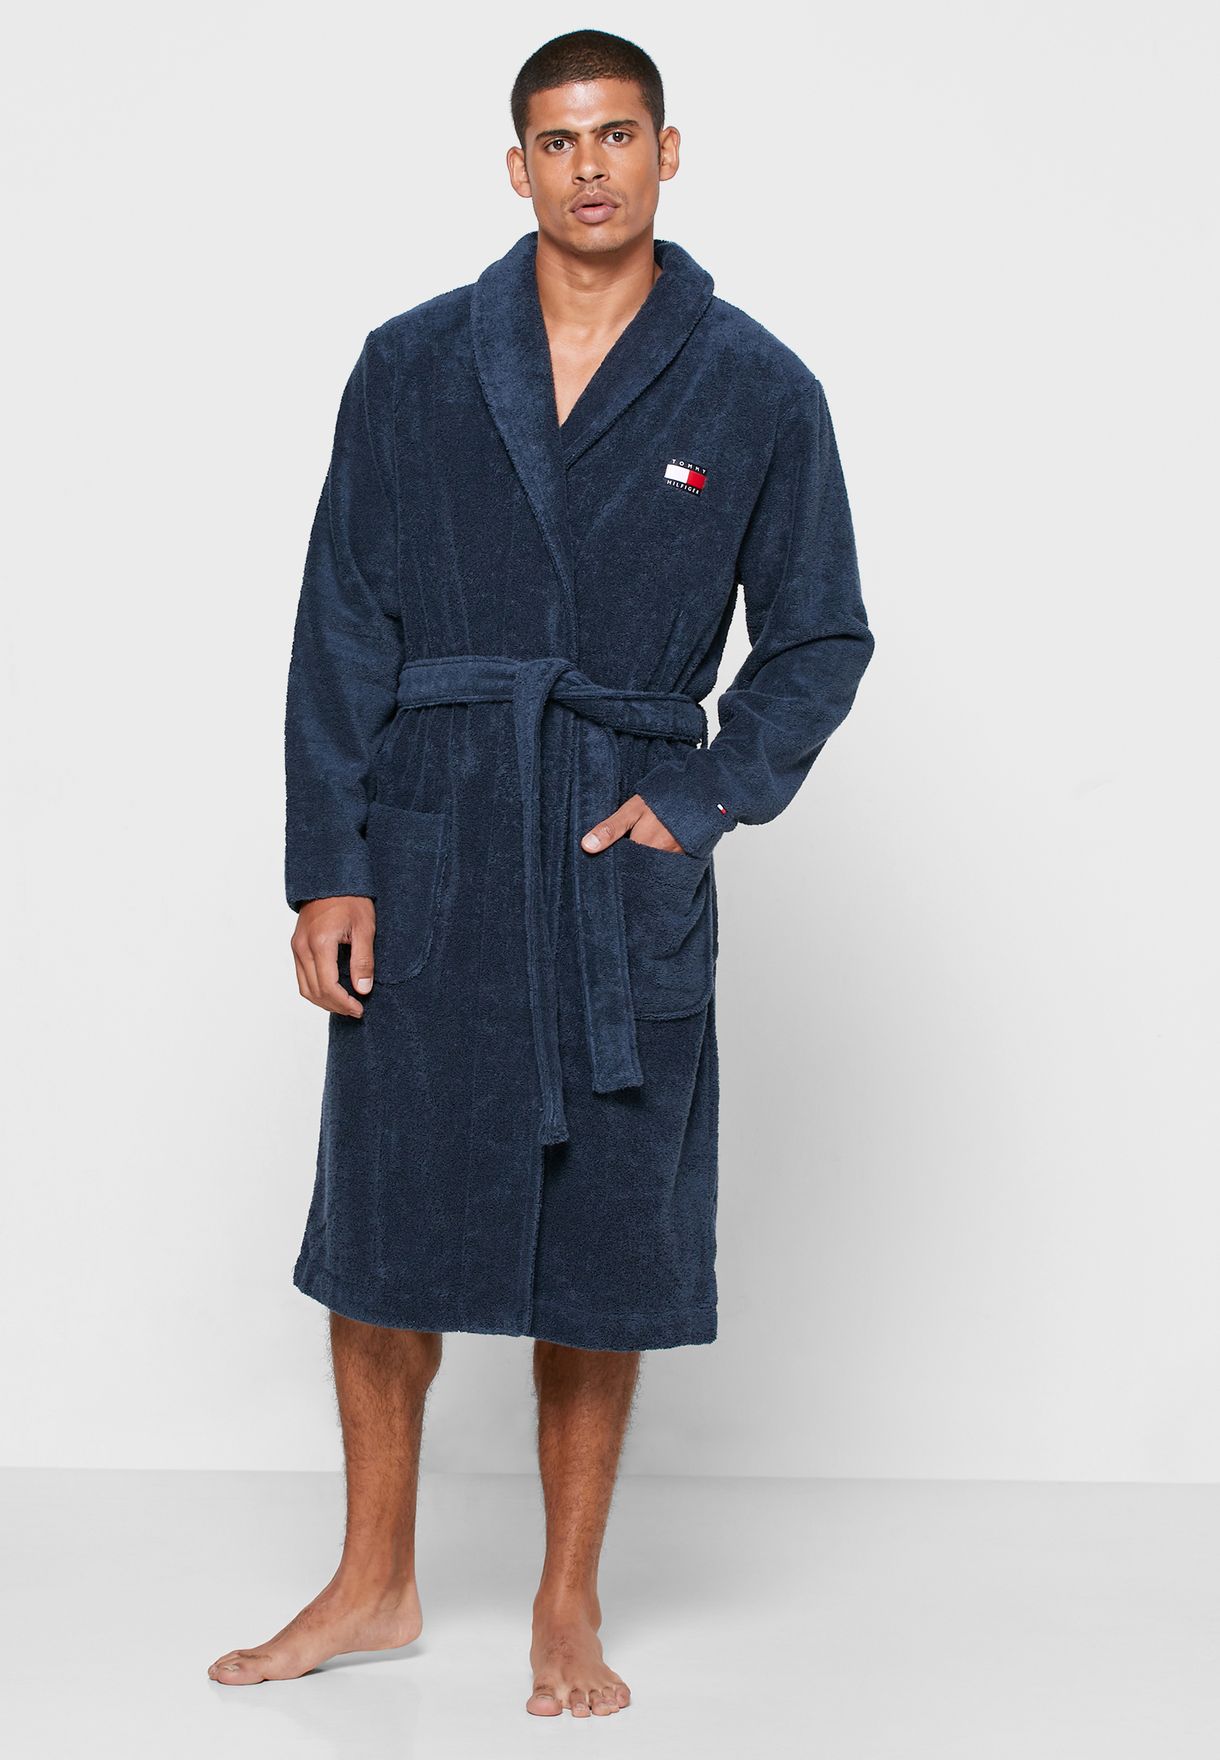 hilfiger robe